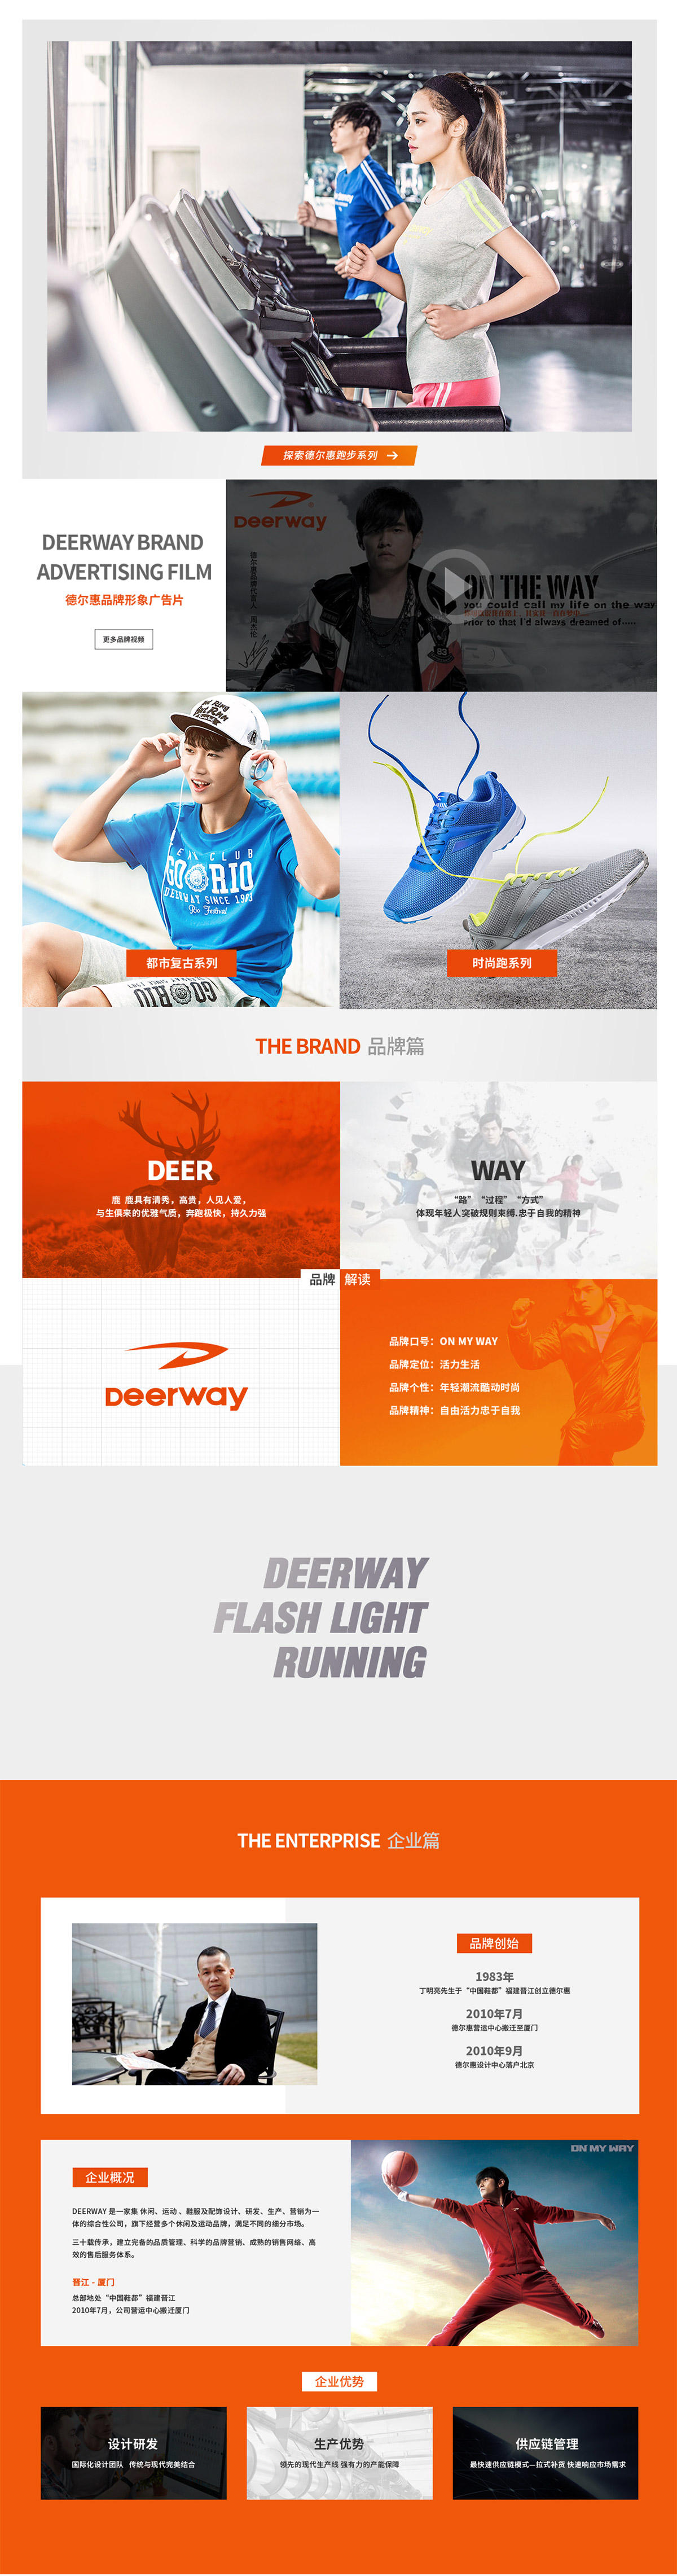 deerway_02